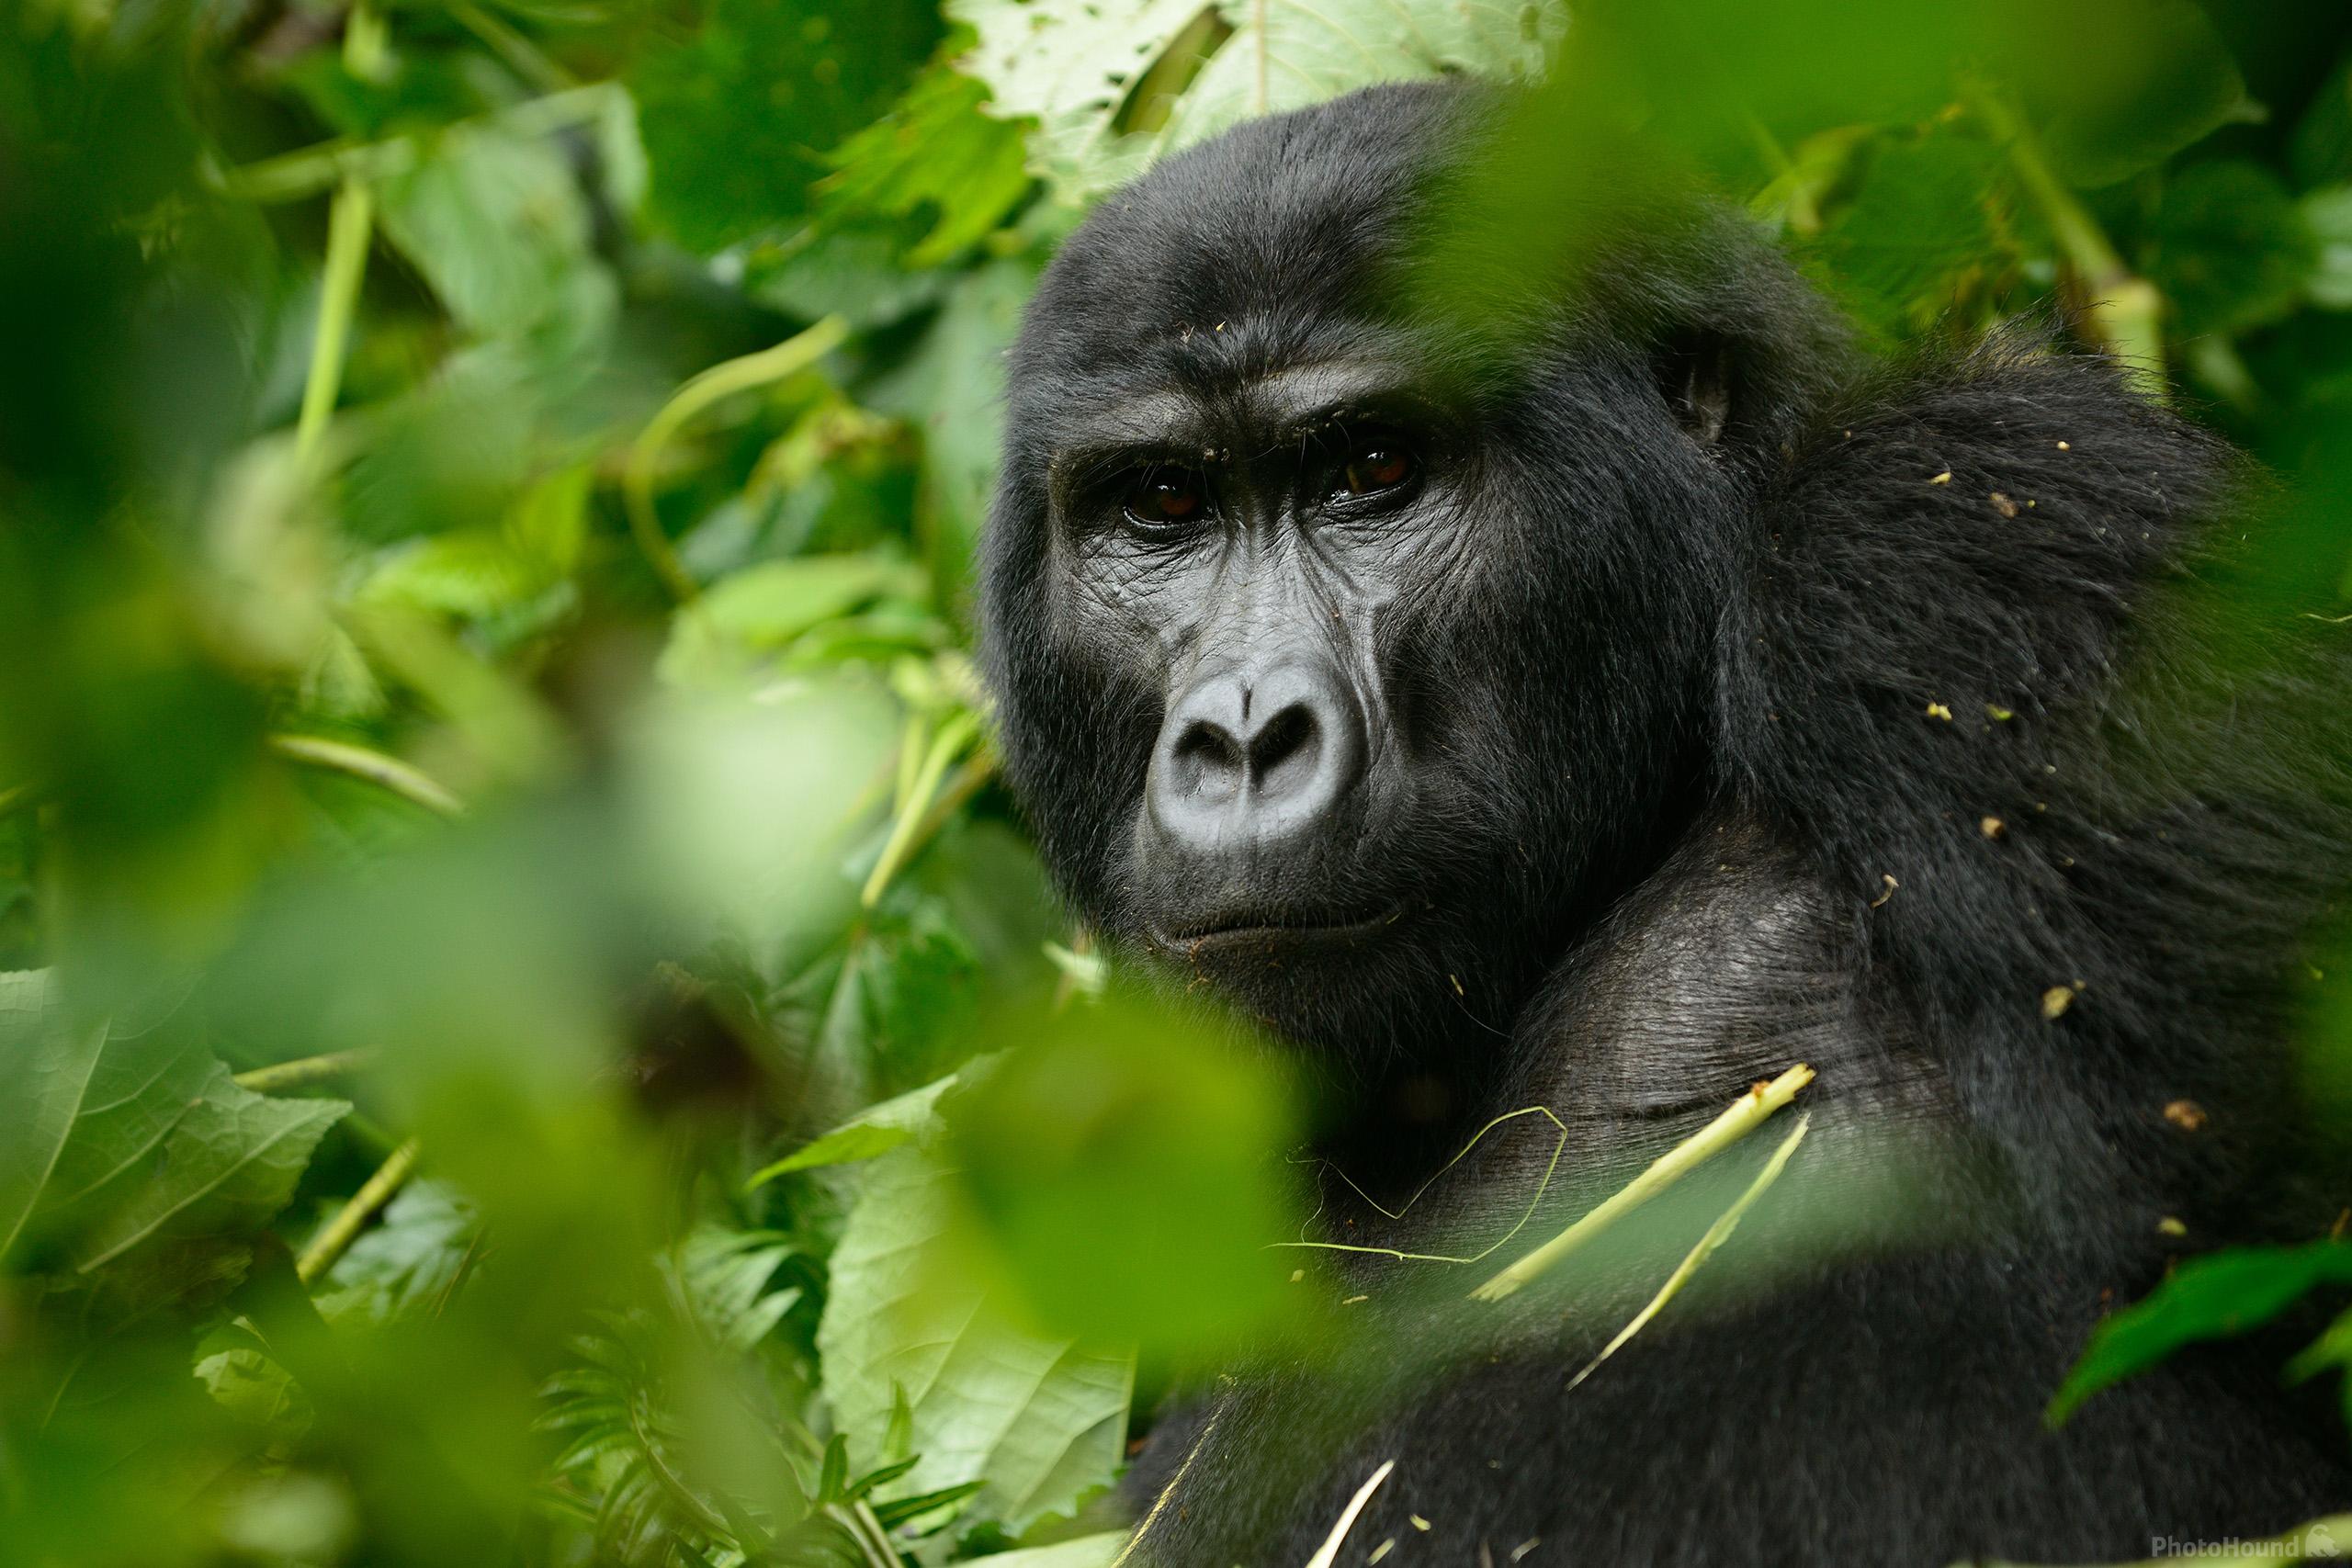 Image of Gorilla Trekking at Ruhija (Bwindi) by Luka Esenko